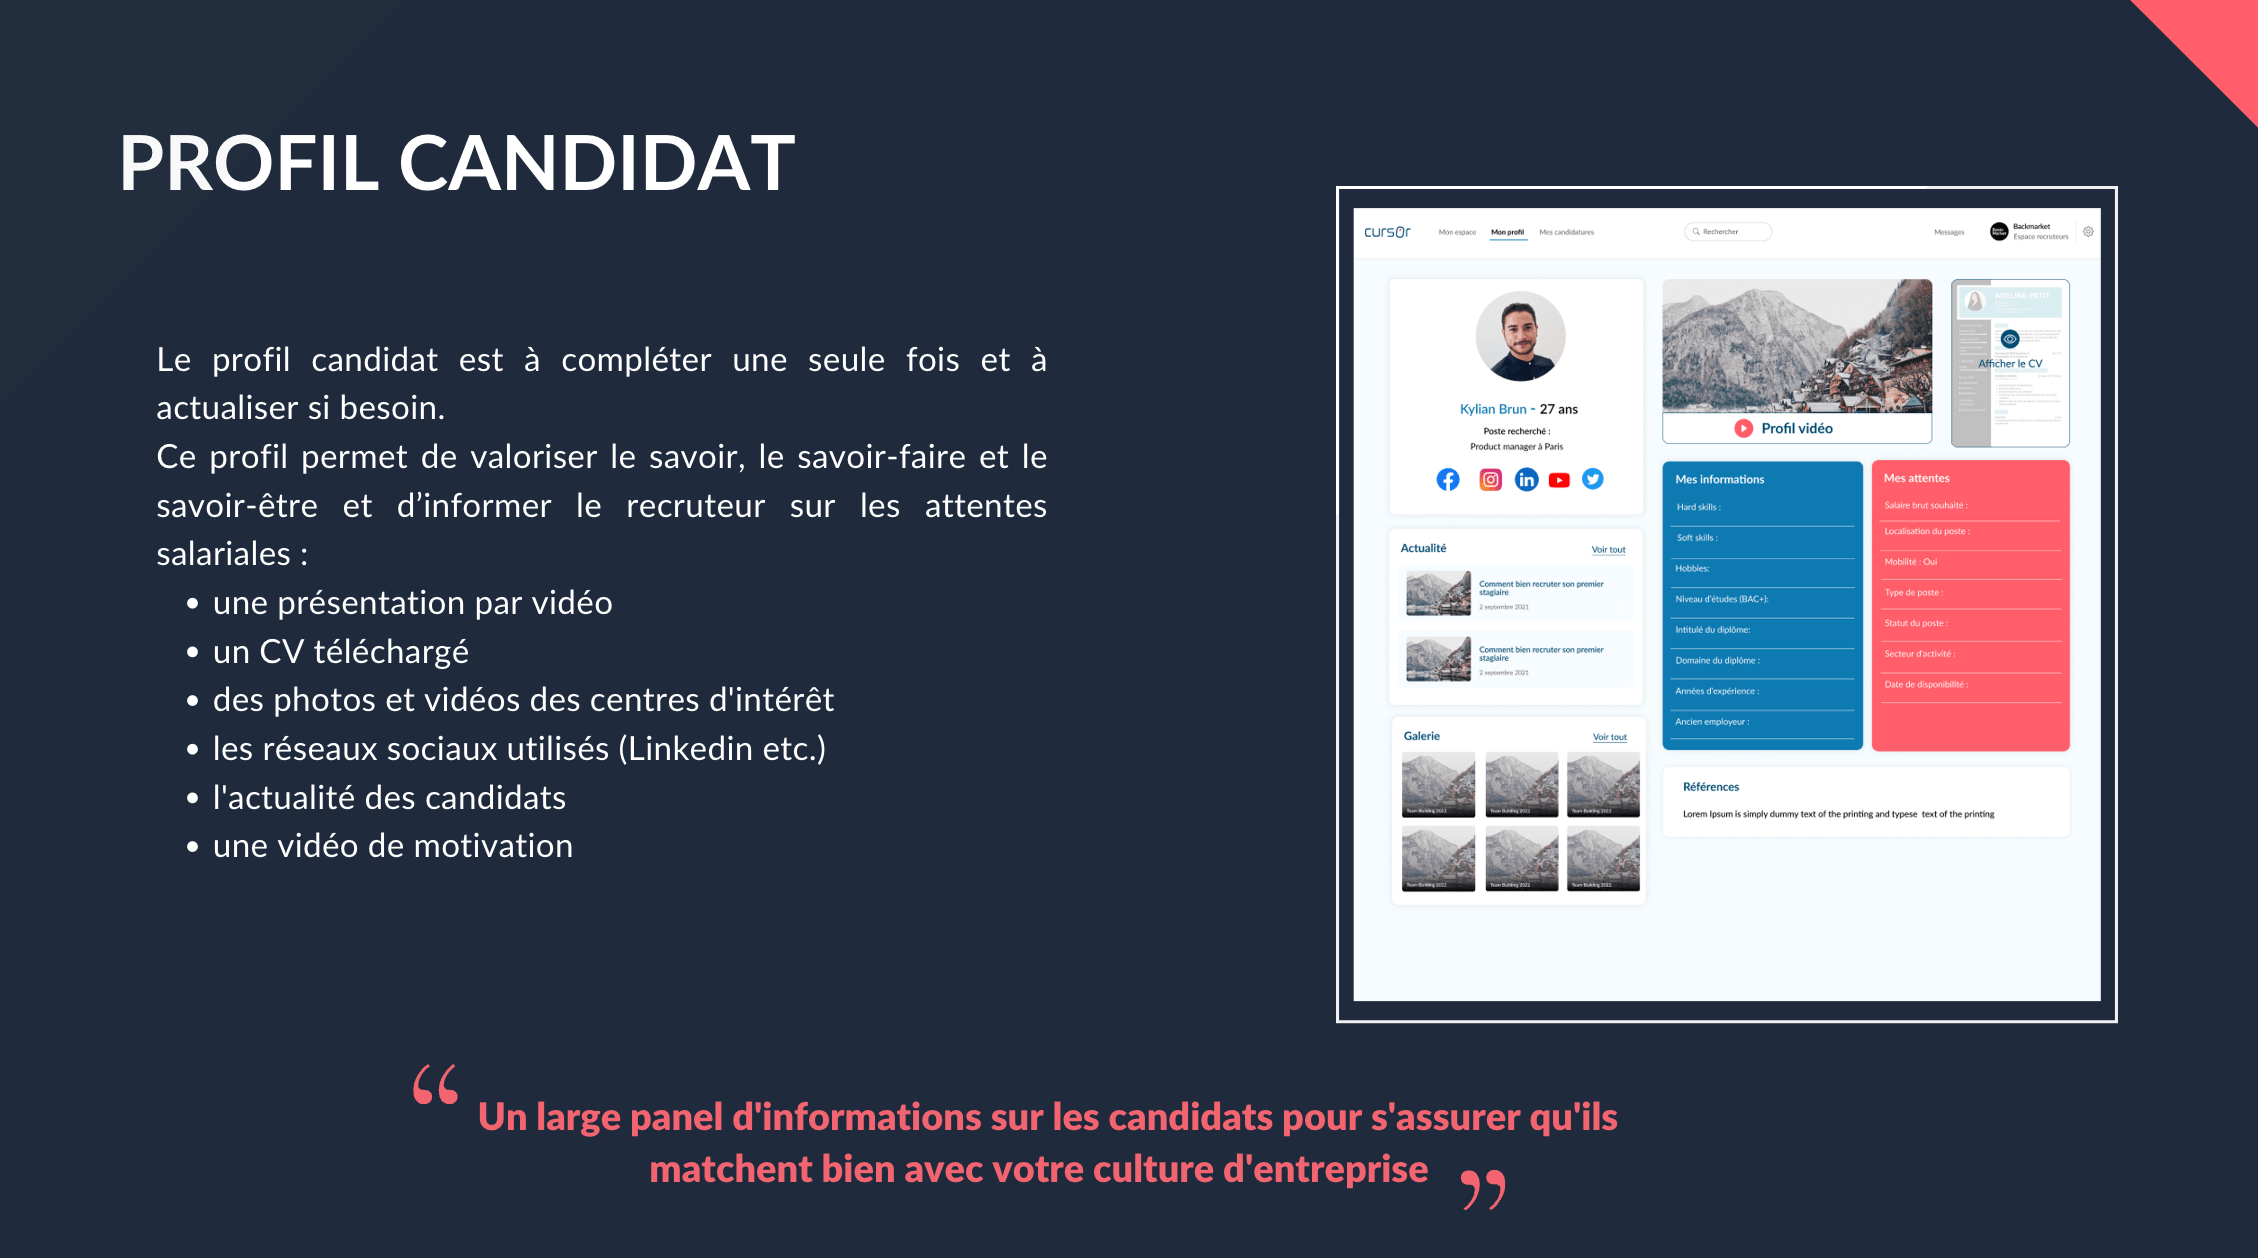 Cursor - Profil candidat